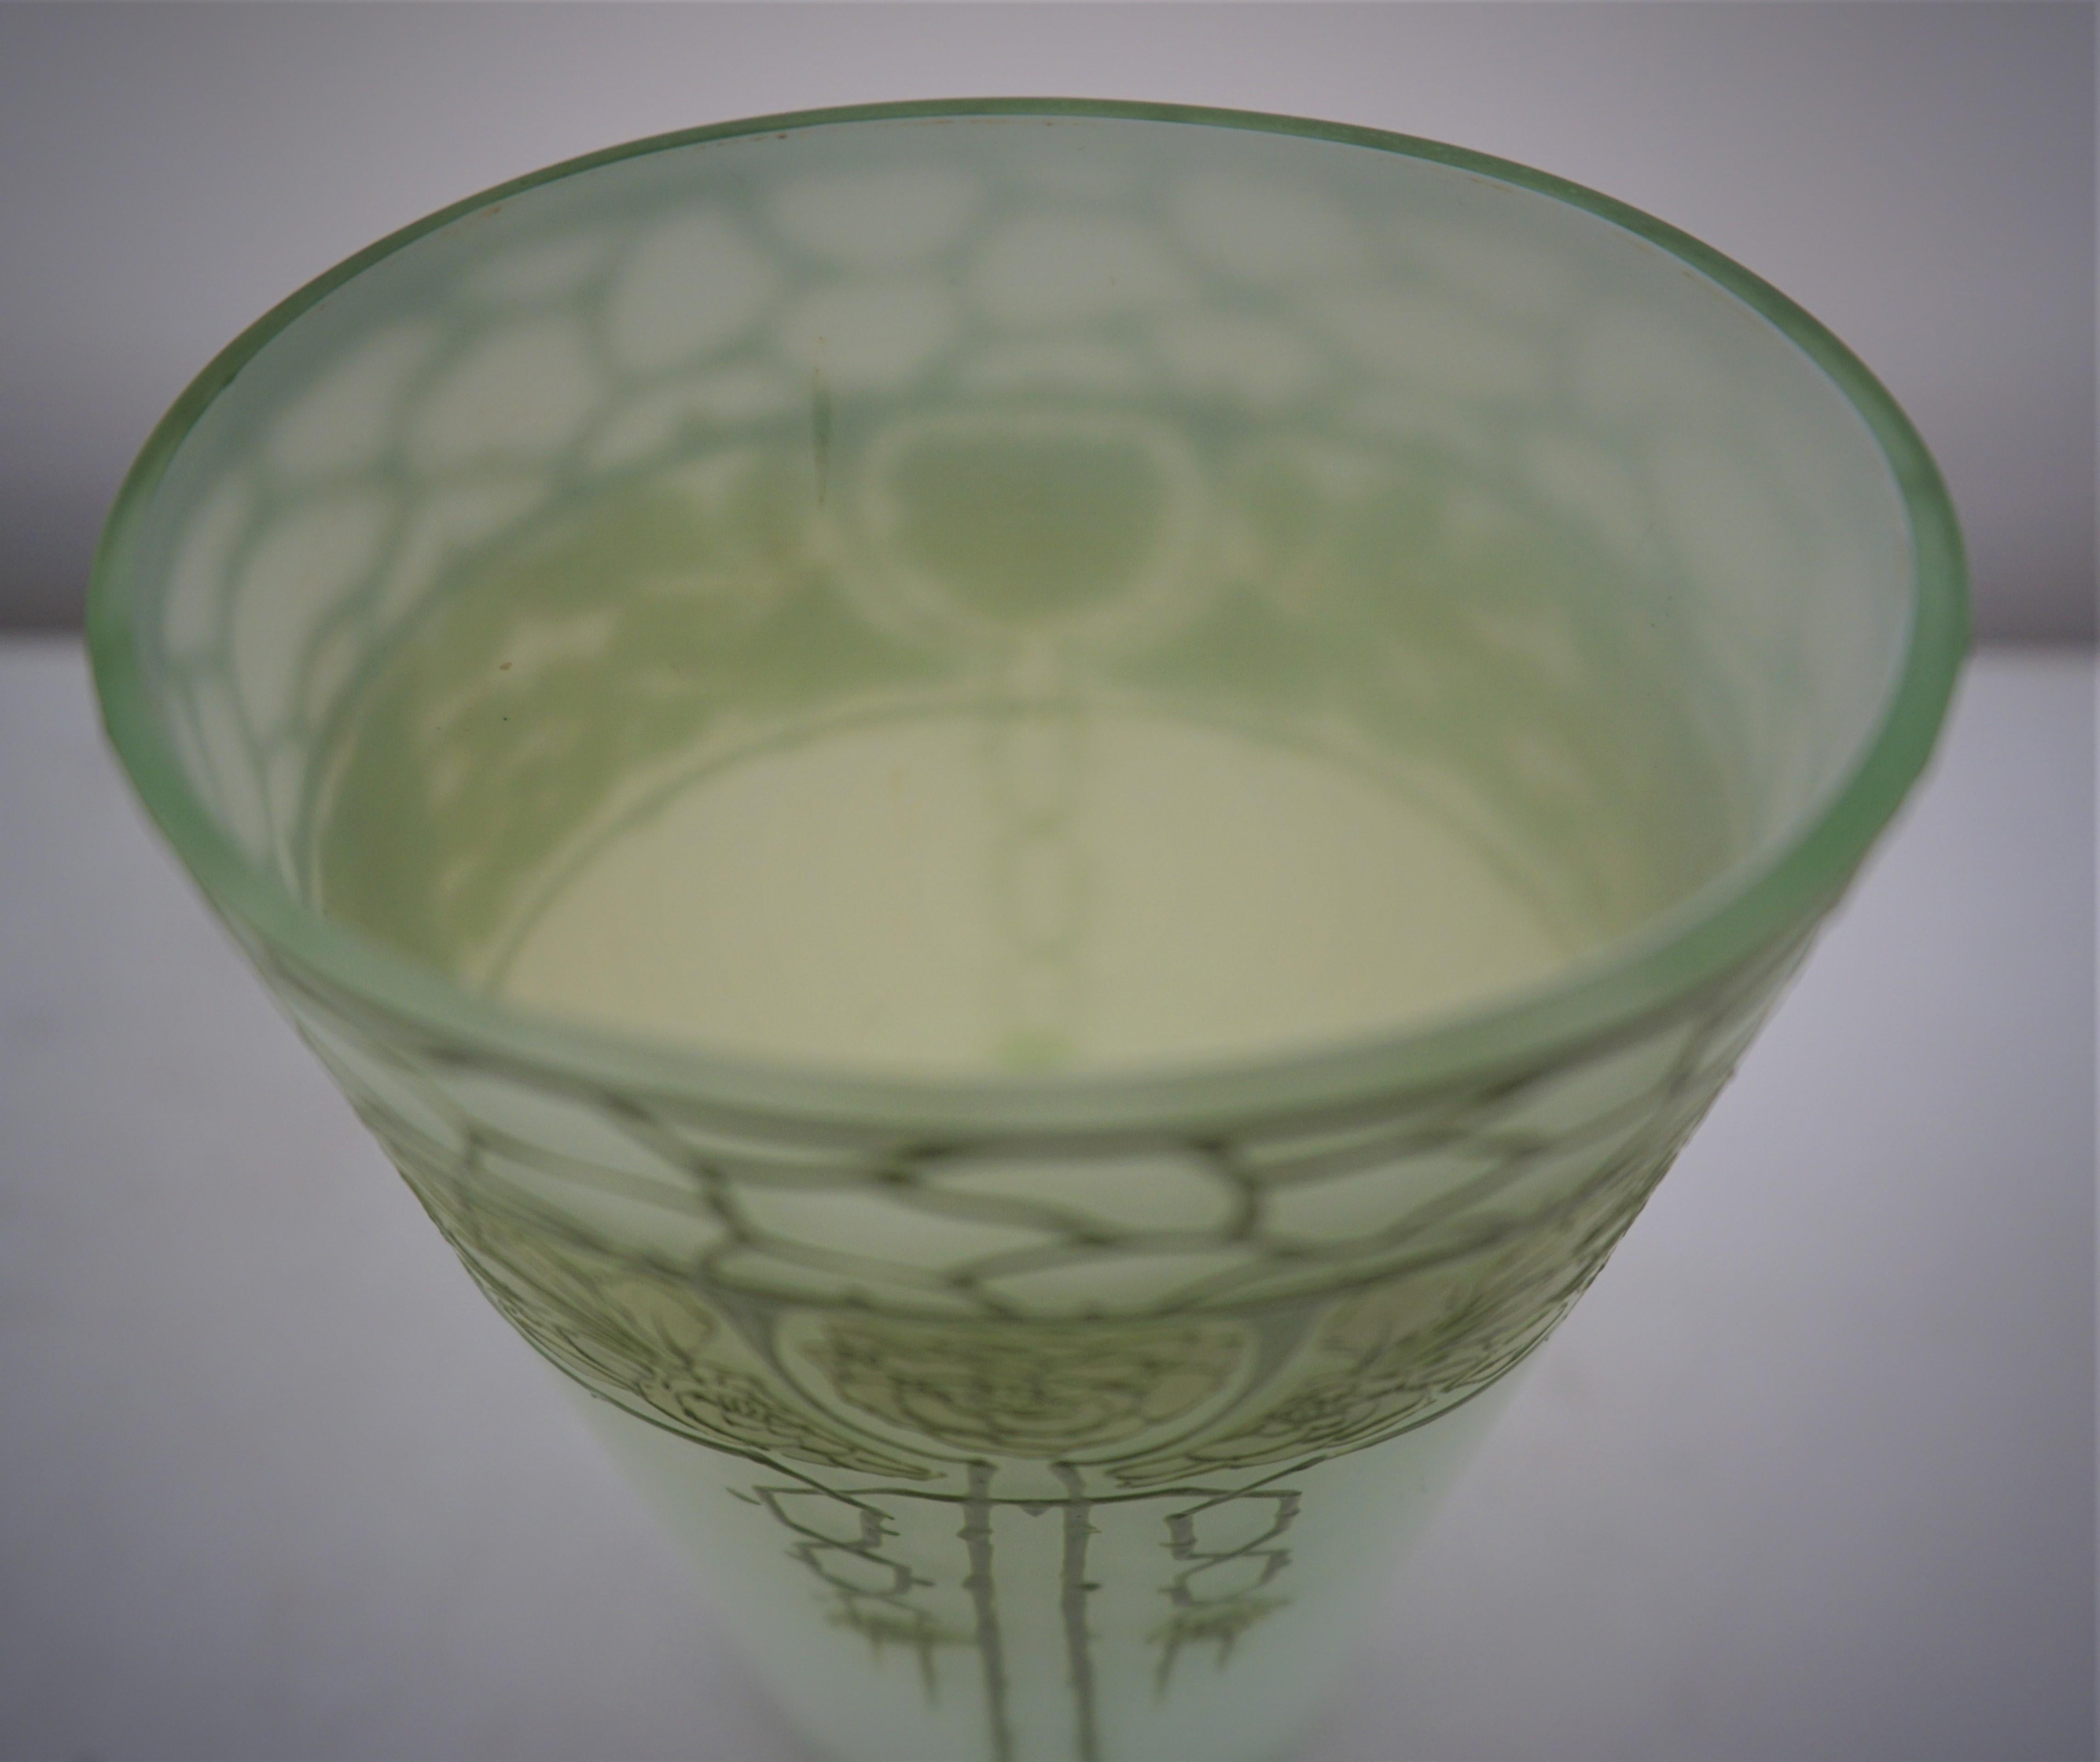  Art Nouveau  Jugendstil cameo glass vase For Sale 1